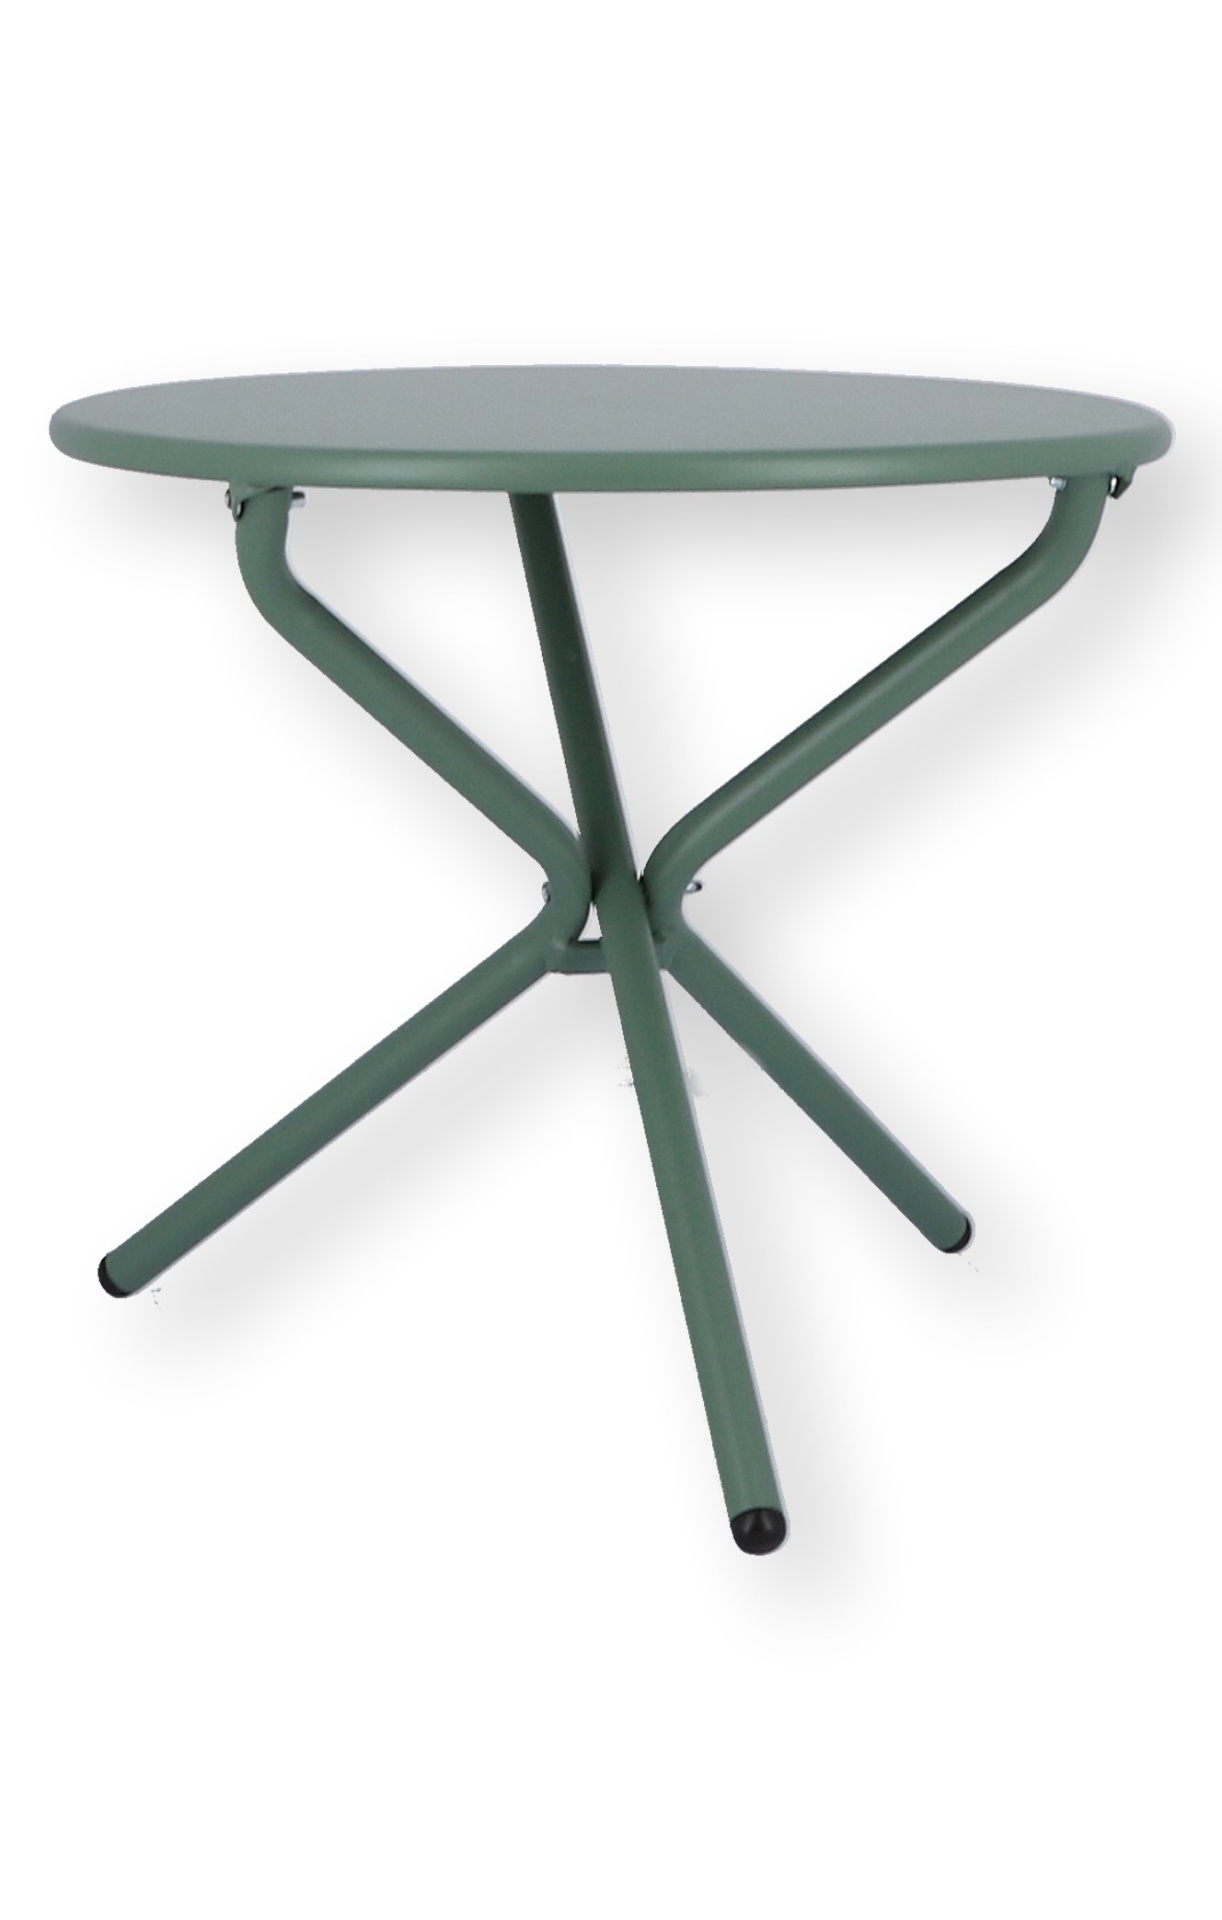 Der Beistelltisch Tris wurde aus Aluminium gefertigt und ist daher auch für den Outdoor Bereich einsetzbar. Designet wurde der Tisch von der Marke Jan Kurtz. Dieser Tisch hat die Farbe Salbei.